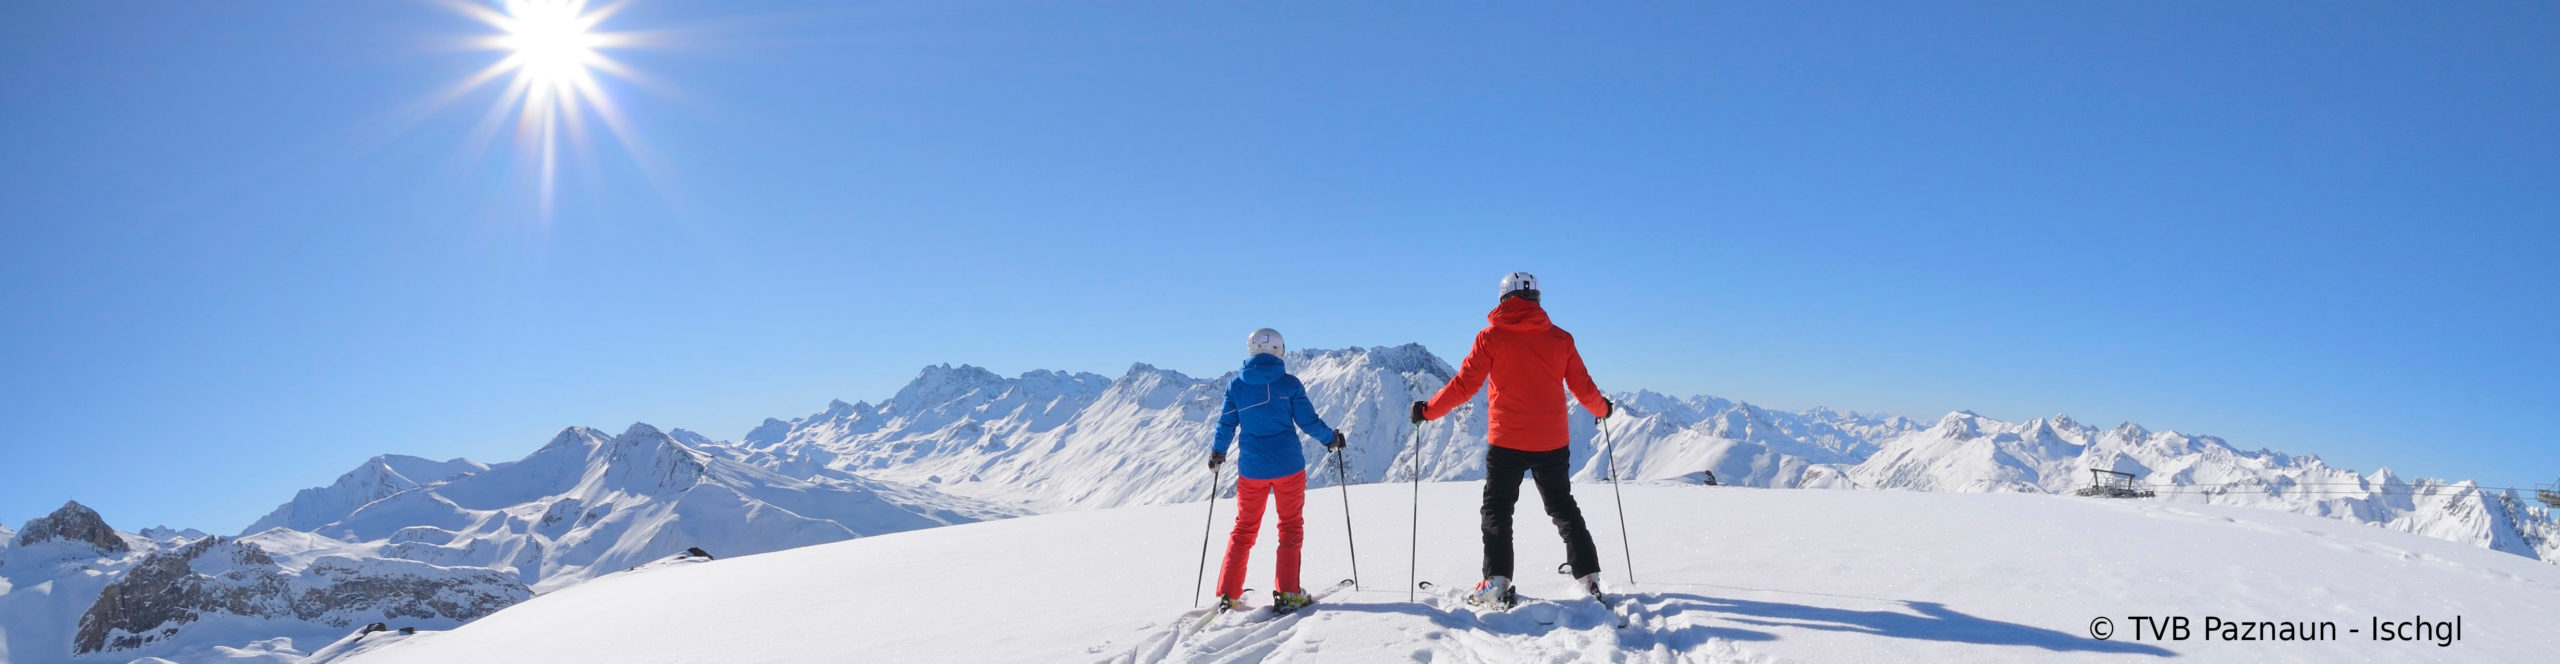 ISCHGL Opening – Skiwochenende mit 3 Skitagen 4 Sterne WellnessHotel mit Schwimmbad 